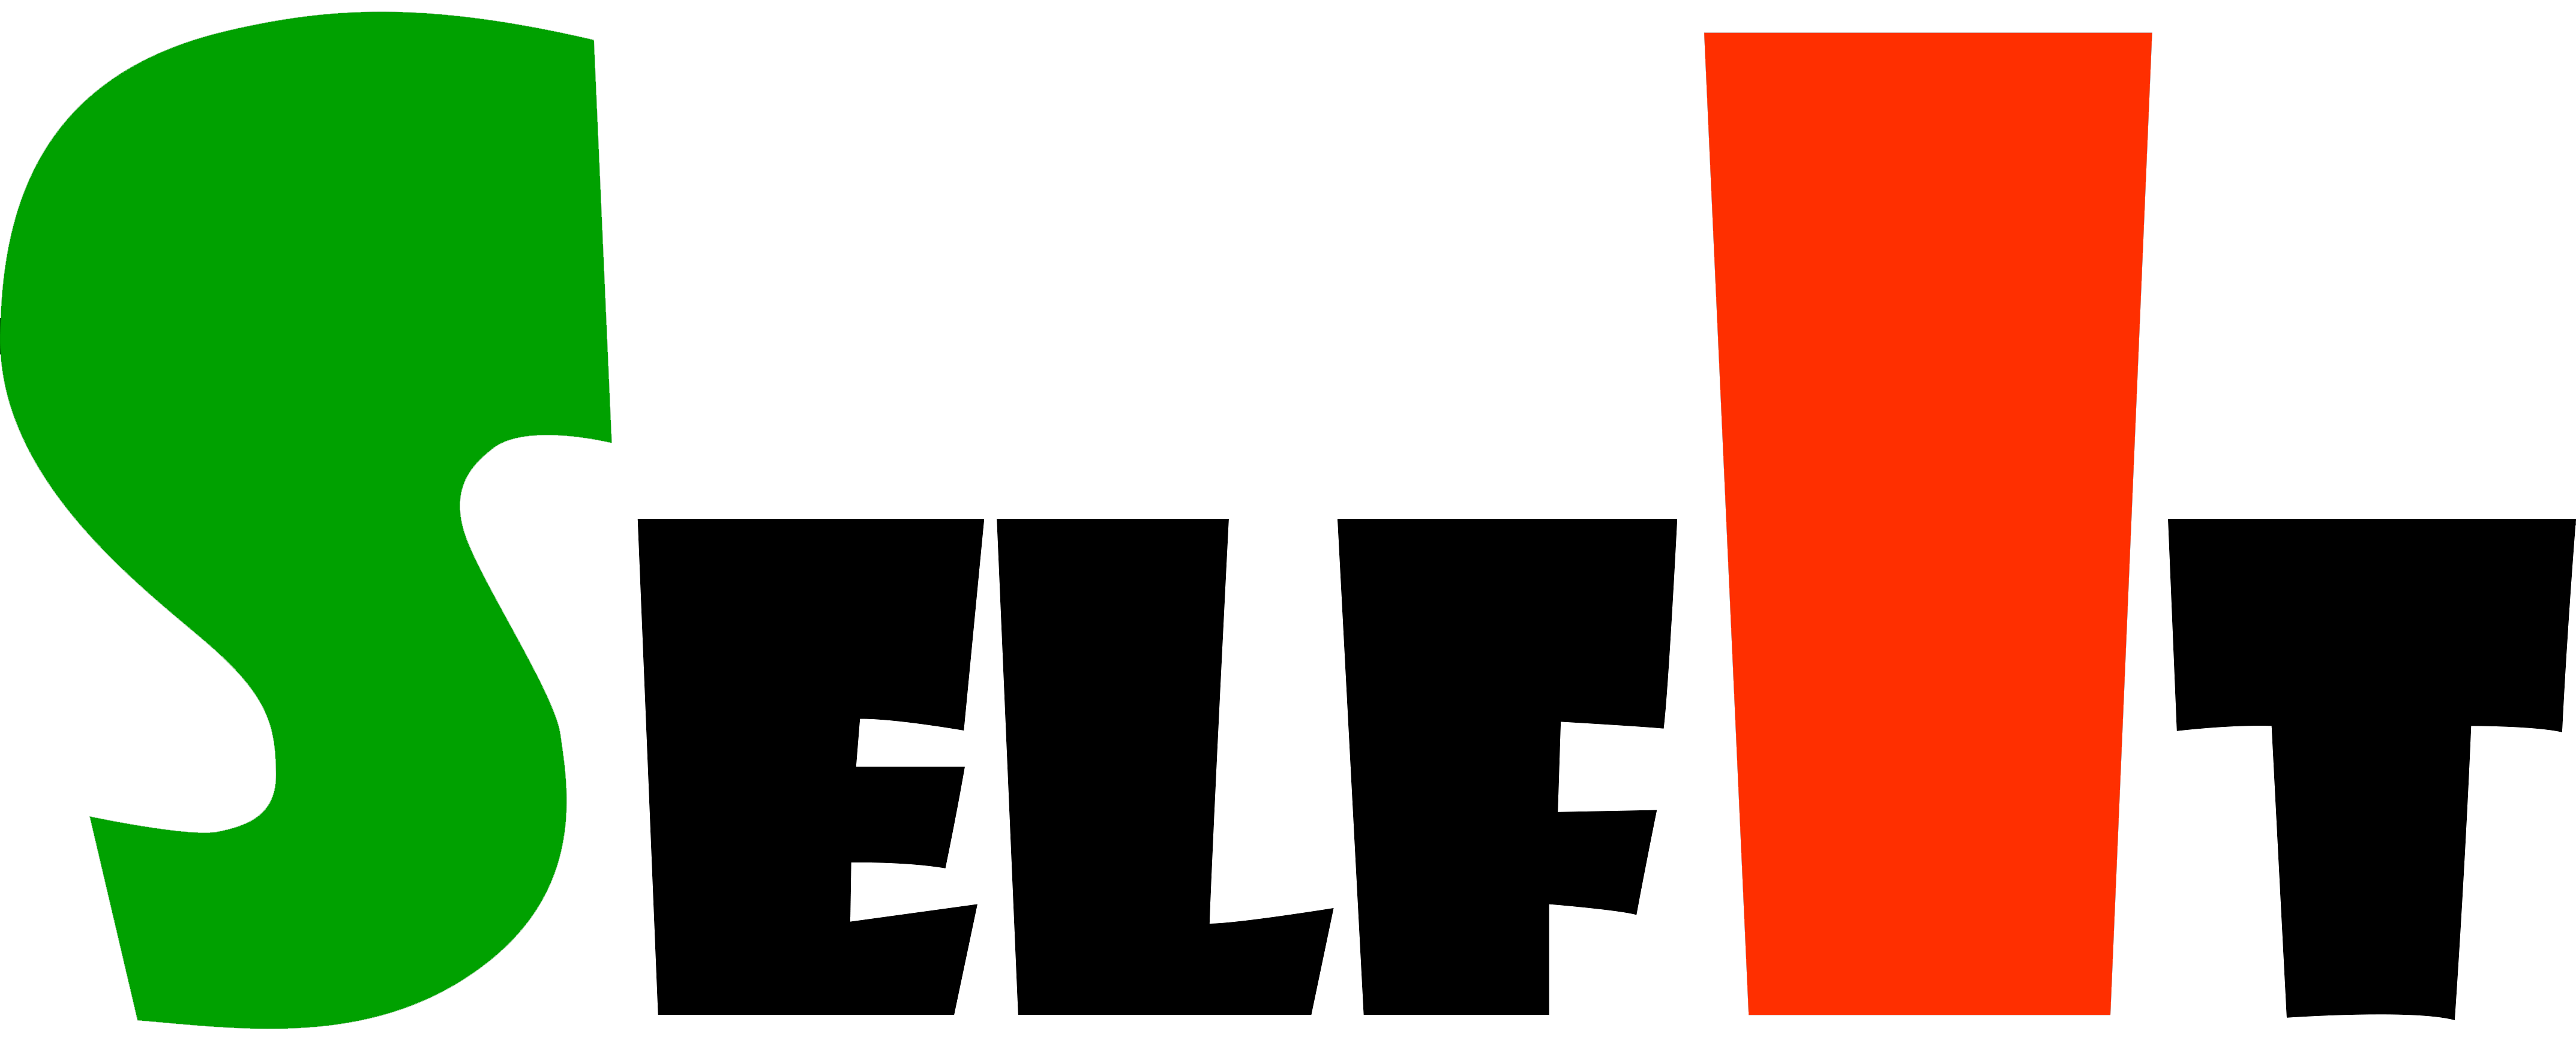 altromercato-logo-formazione